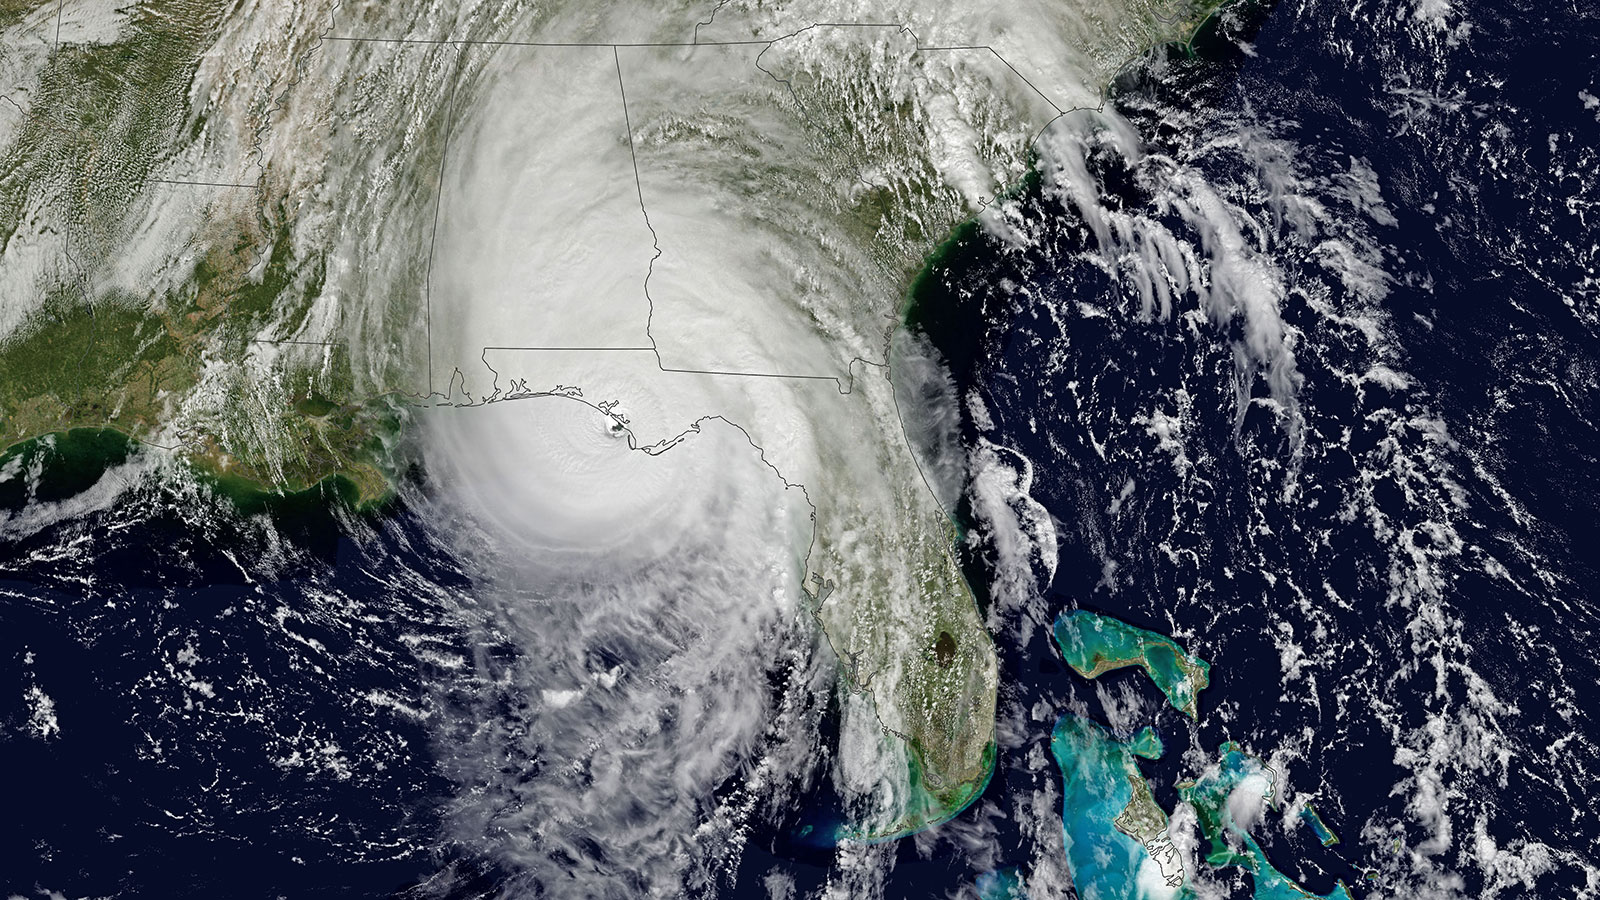 Vista desde arriba del huracán Michael al colisionar con el noroeste del estado de Florida.